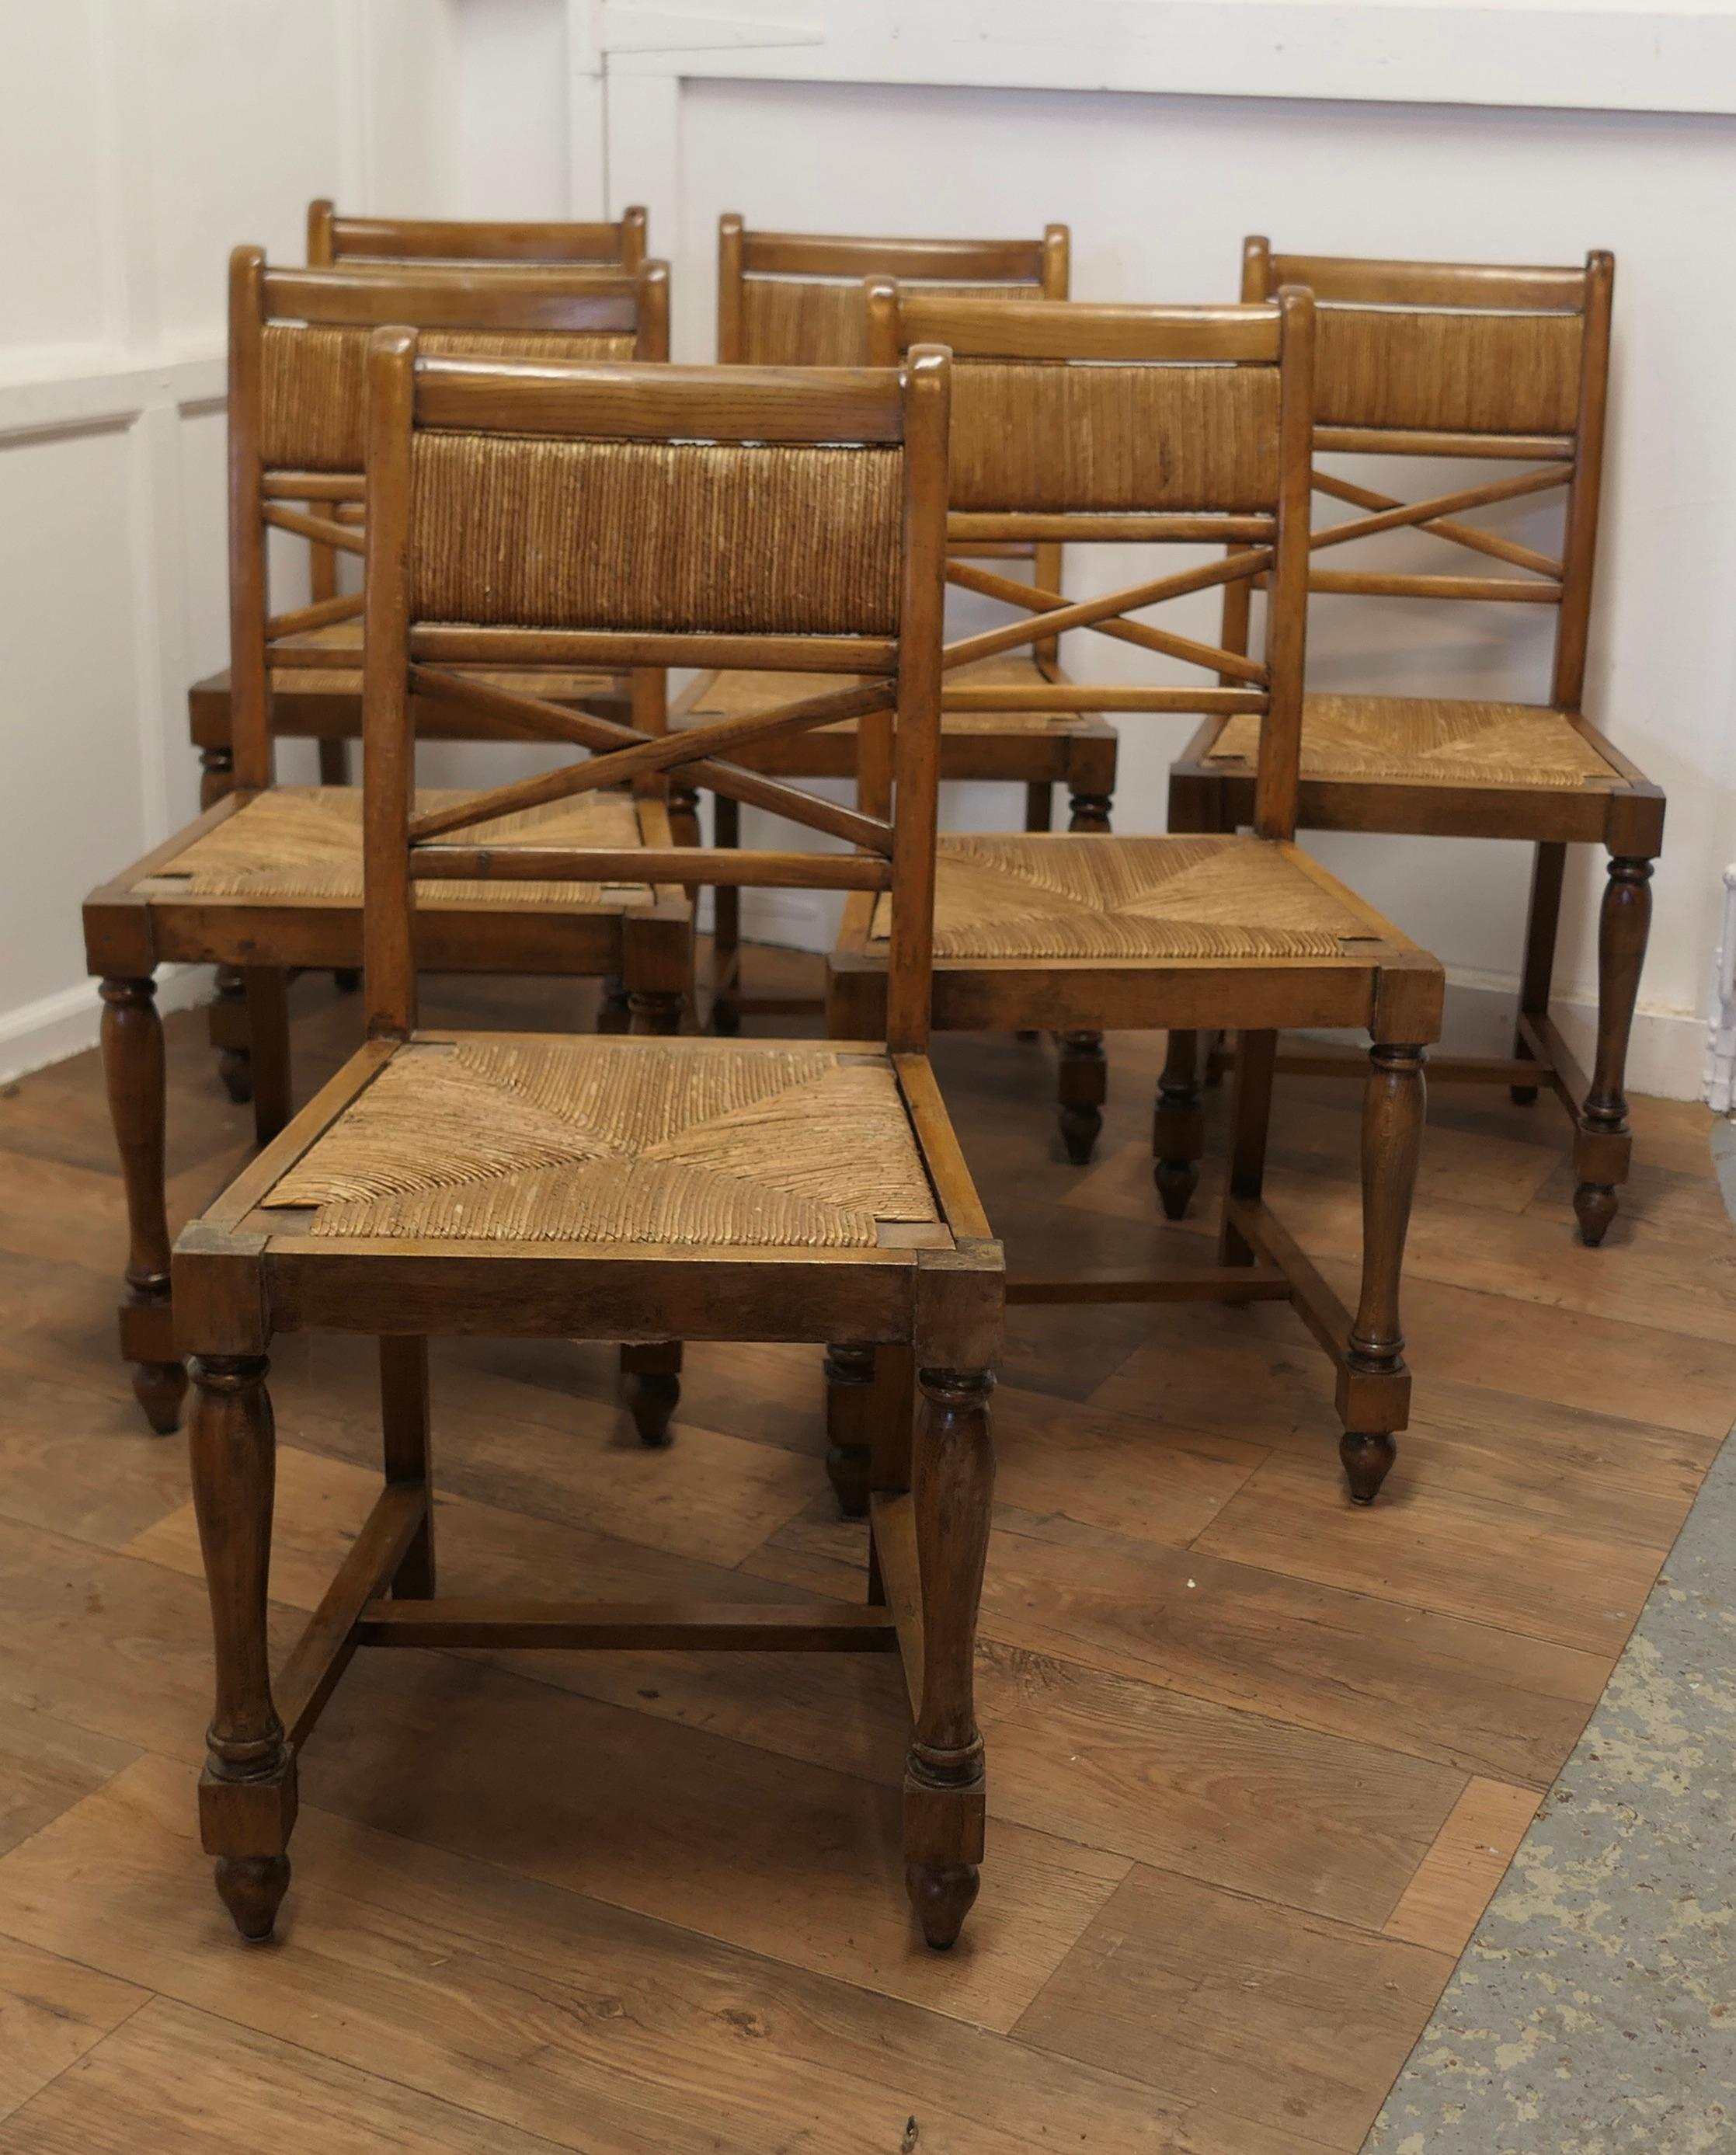 6 Stühle aus französischer Golden Oak Country Dining Chairs 

Dies ist ein sehr attraktives Set von Stühlen aus Goldener Eiche, insgesamt 6 Stück
Die Stühle haben ein klassisches Design, sind aus massivem Eichenholz und in einer guten Farbe.
Die